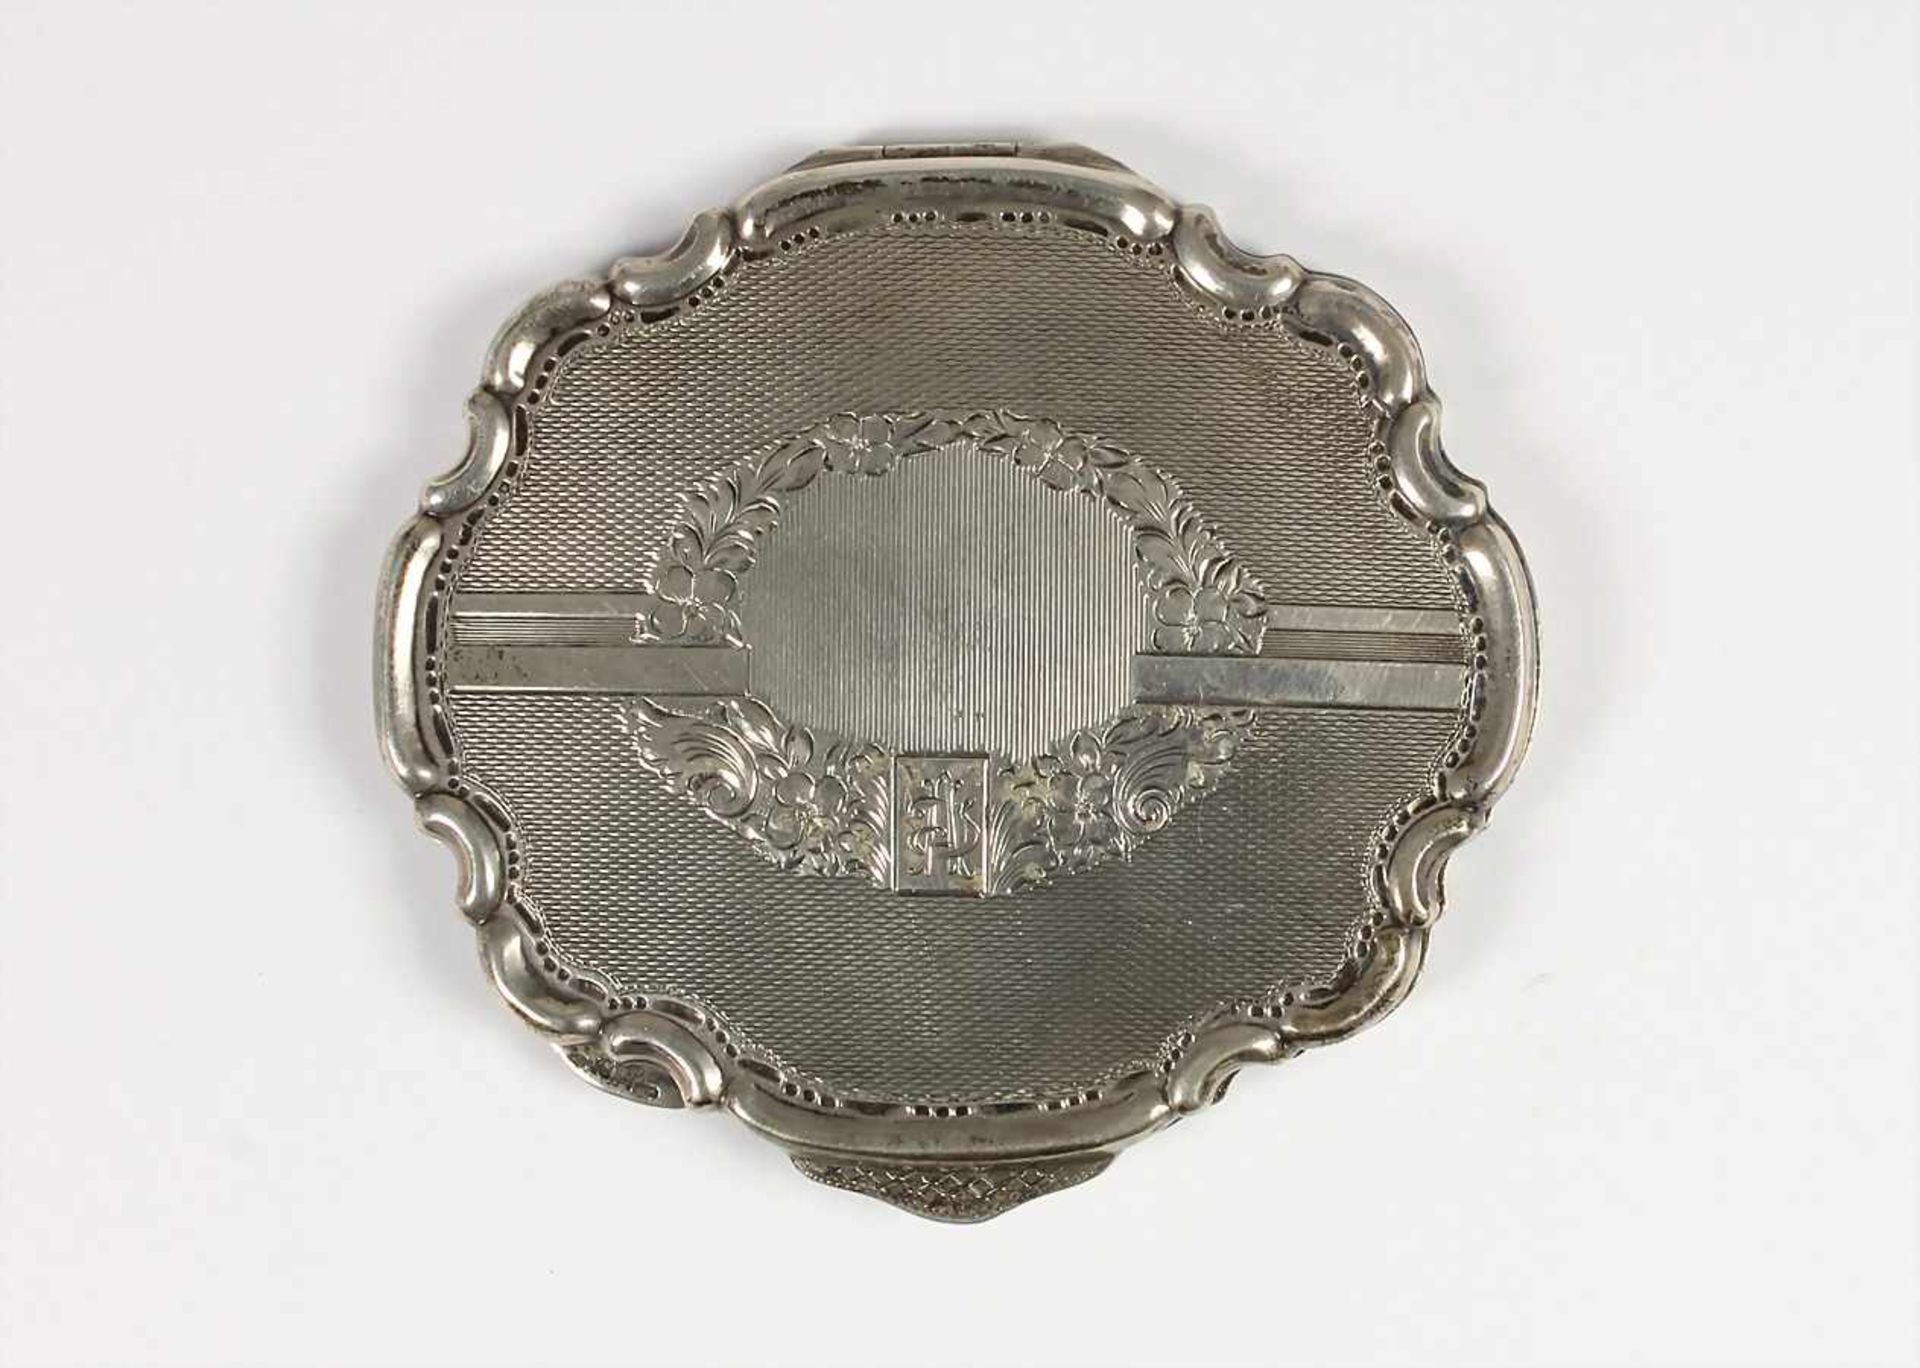 Schminkutensil Anfang 20 Jhd., Silber 800/000, innen mit Spiegel, 90,0 x 83,2 mm, total 98,0 g